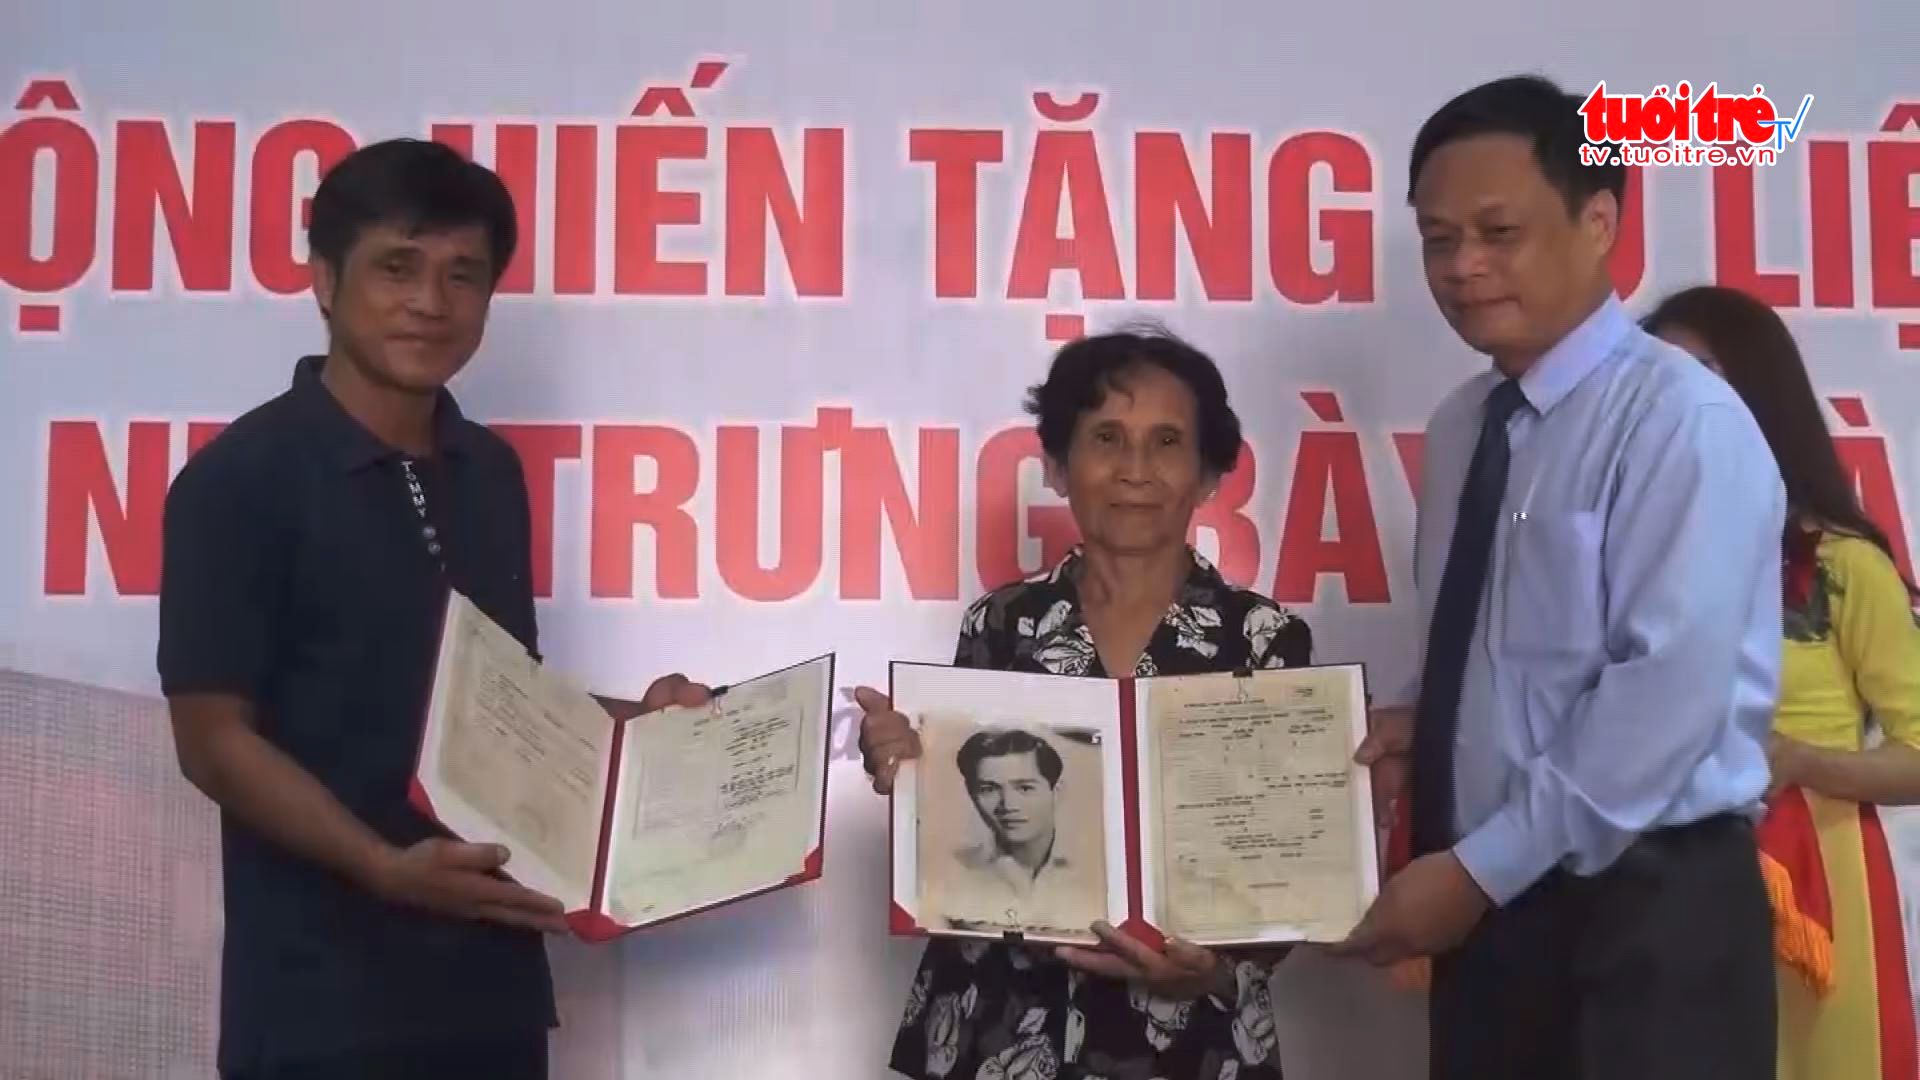 Da Nang calls for donation of documents related to Hoang Sa (Paracels)